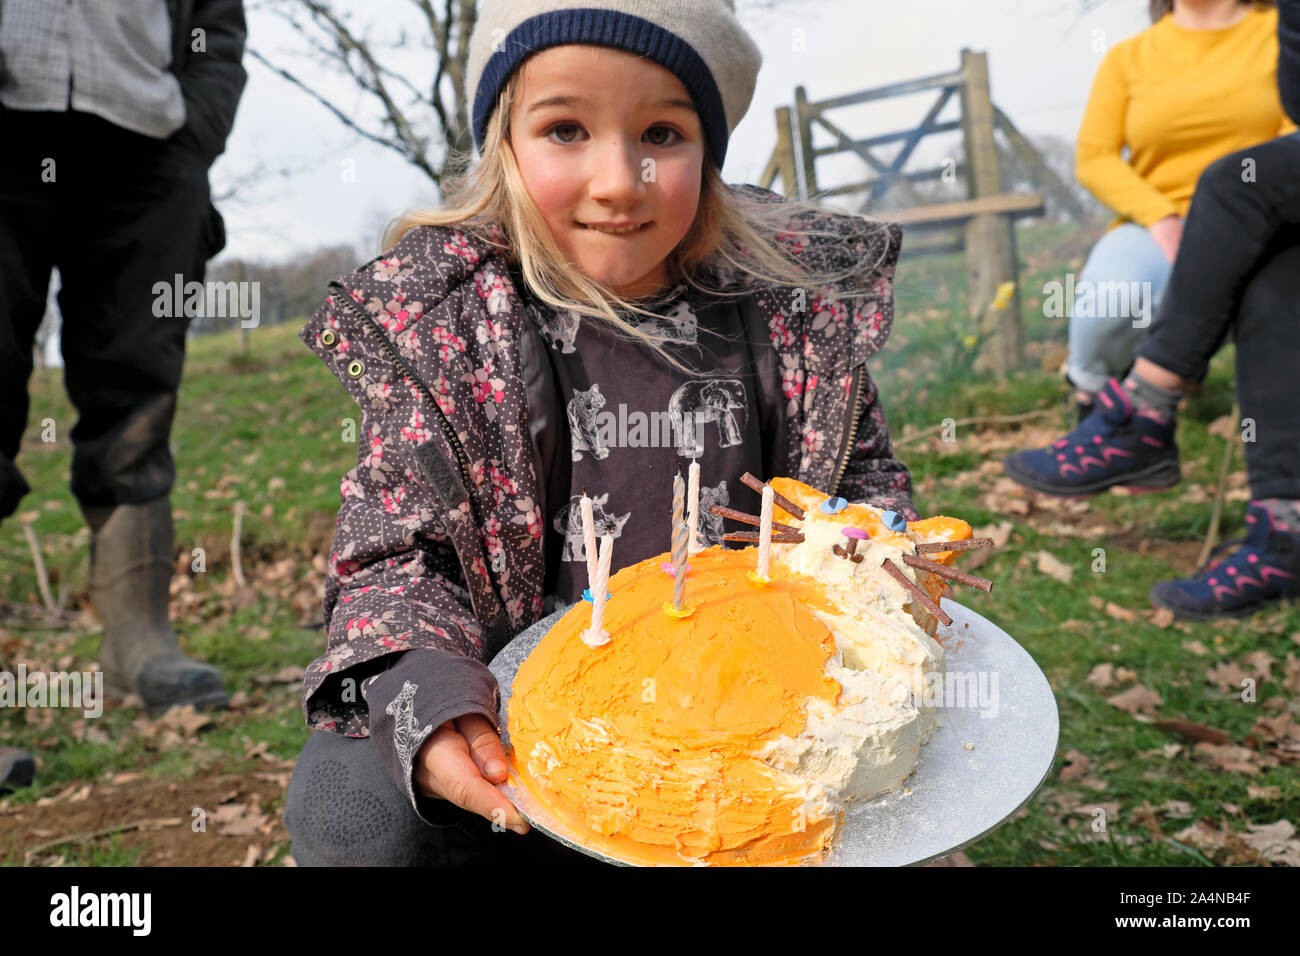 Petite fille de 6 ans tenant son chat orange gingembre gâteau célébrant son anniversaire party outdoors extérieur au pays de Galles UK KATHY DEWITT Banque D'Images